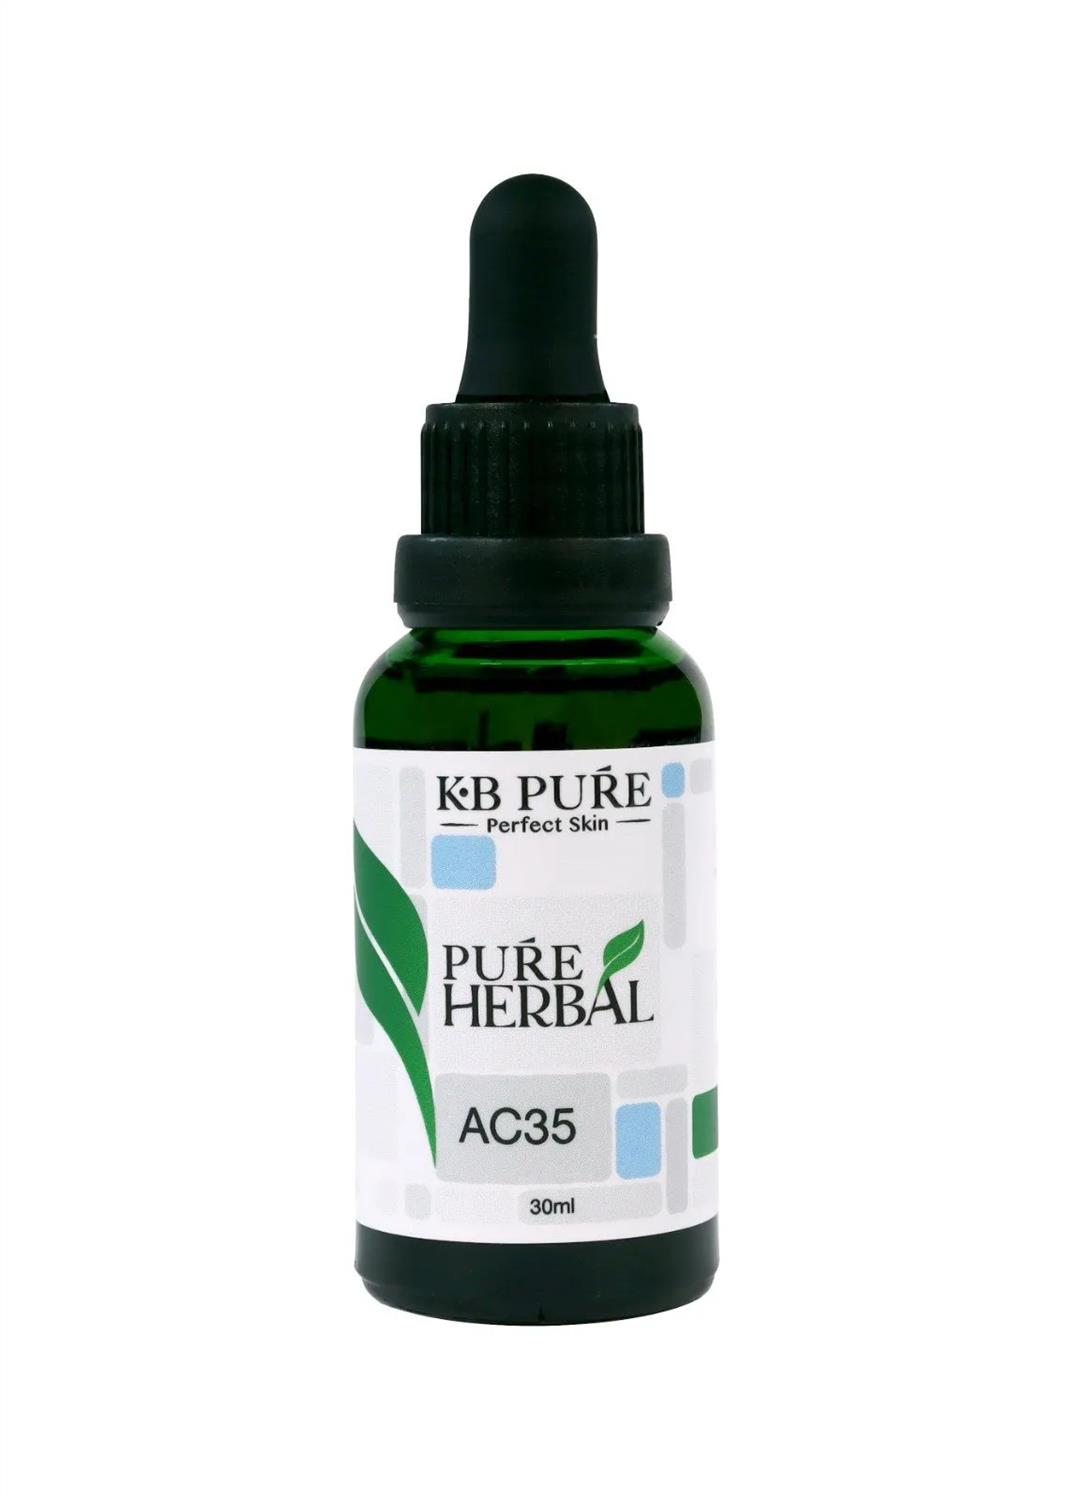 KB PURE - Detox hỗ trợ điều trị mụn nội tiết, cần bằng nội tiết, cải thiện phụ khoa AC35 30ml